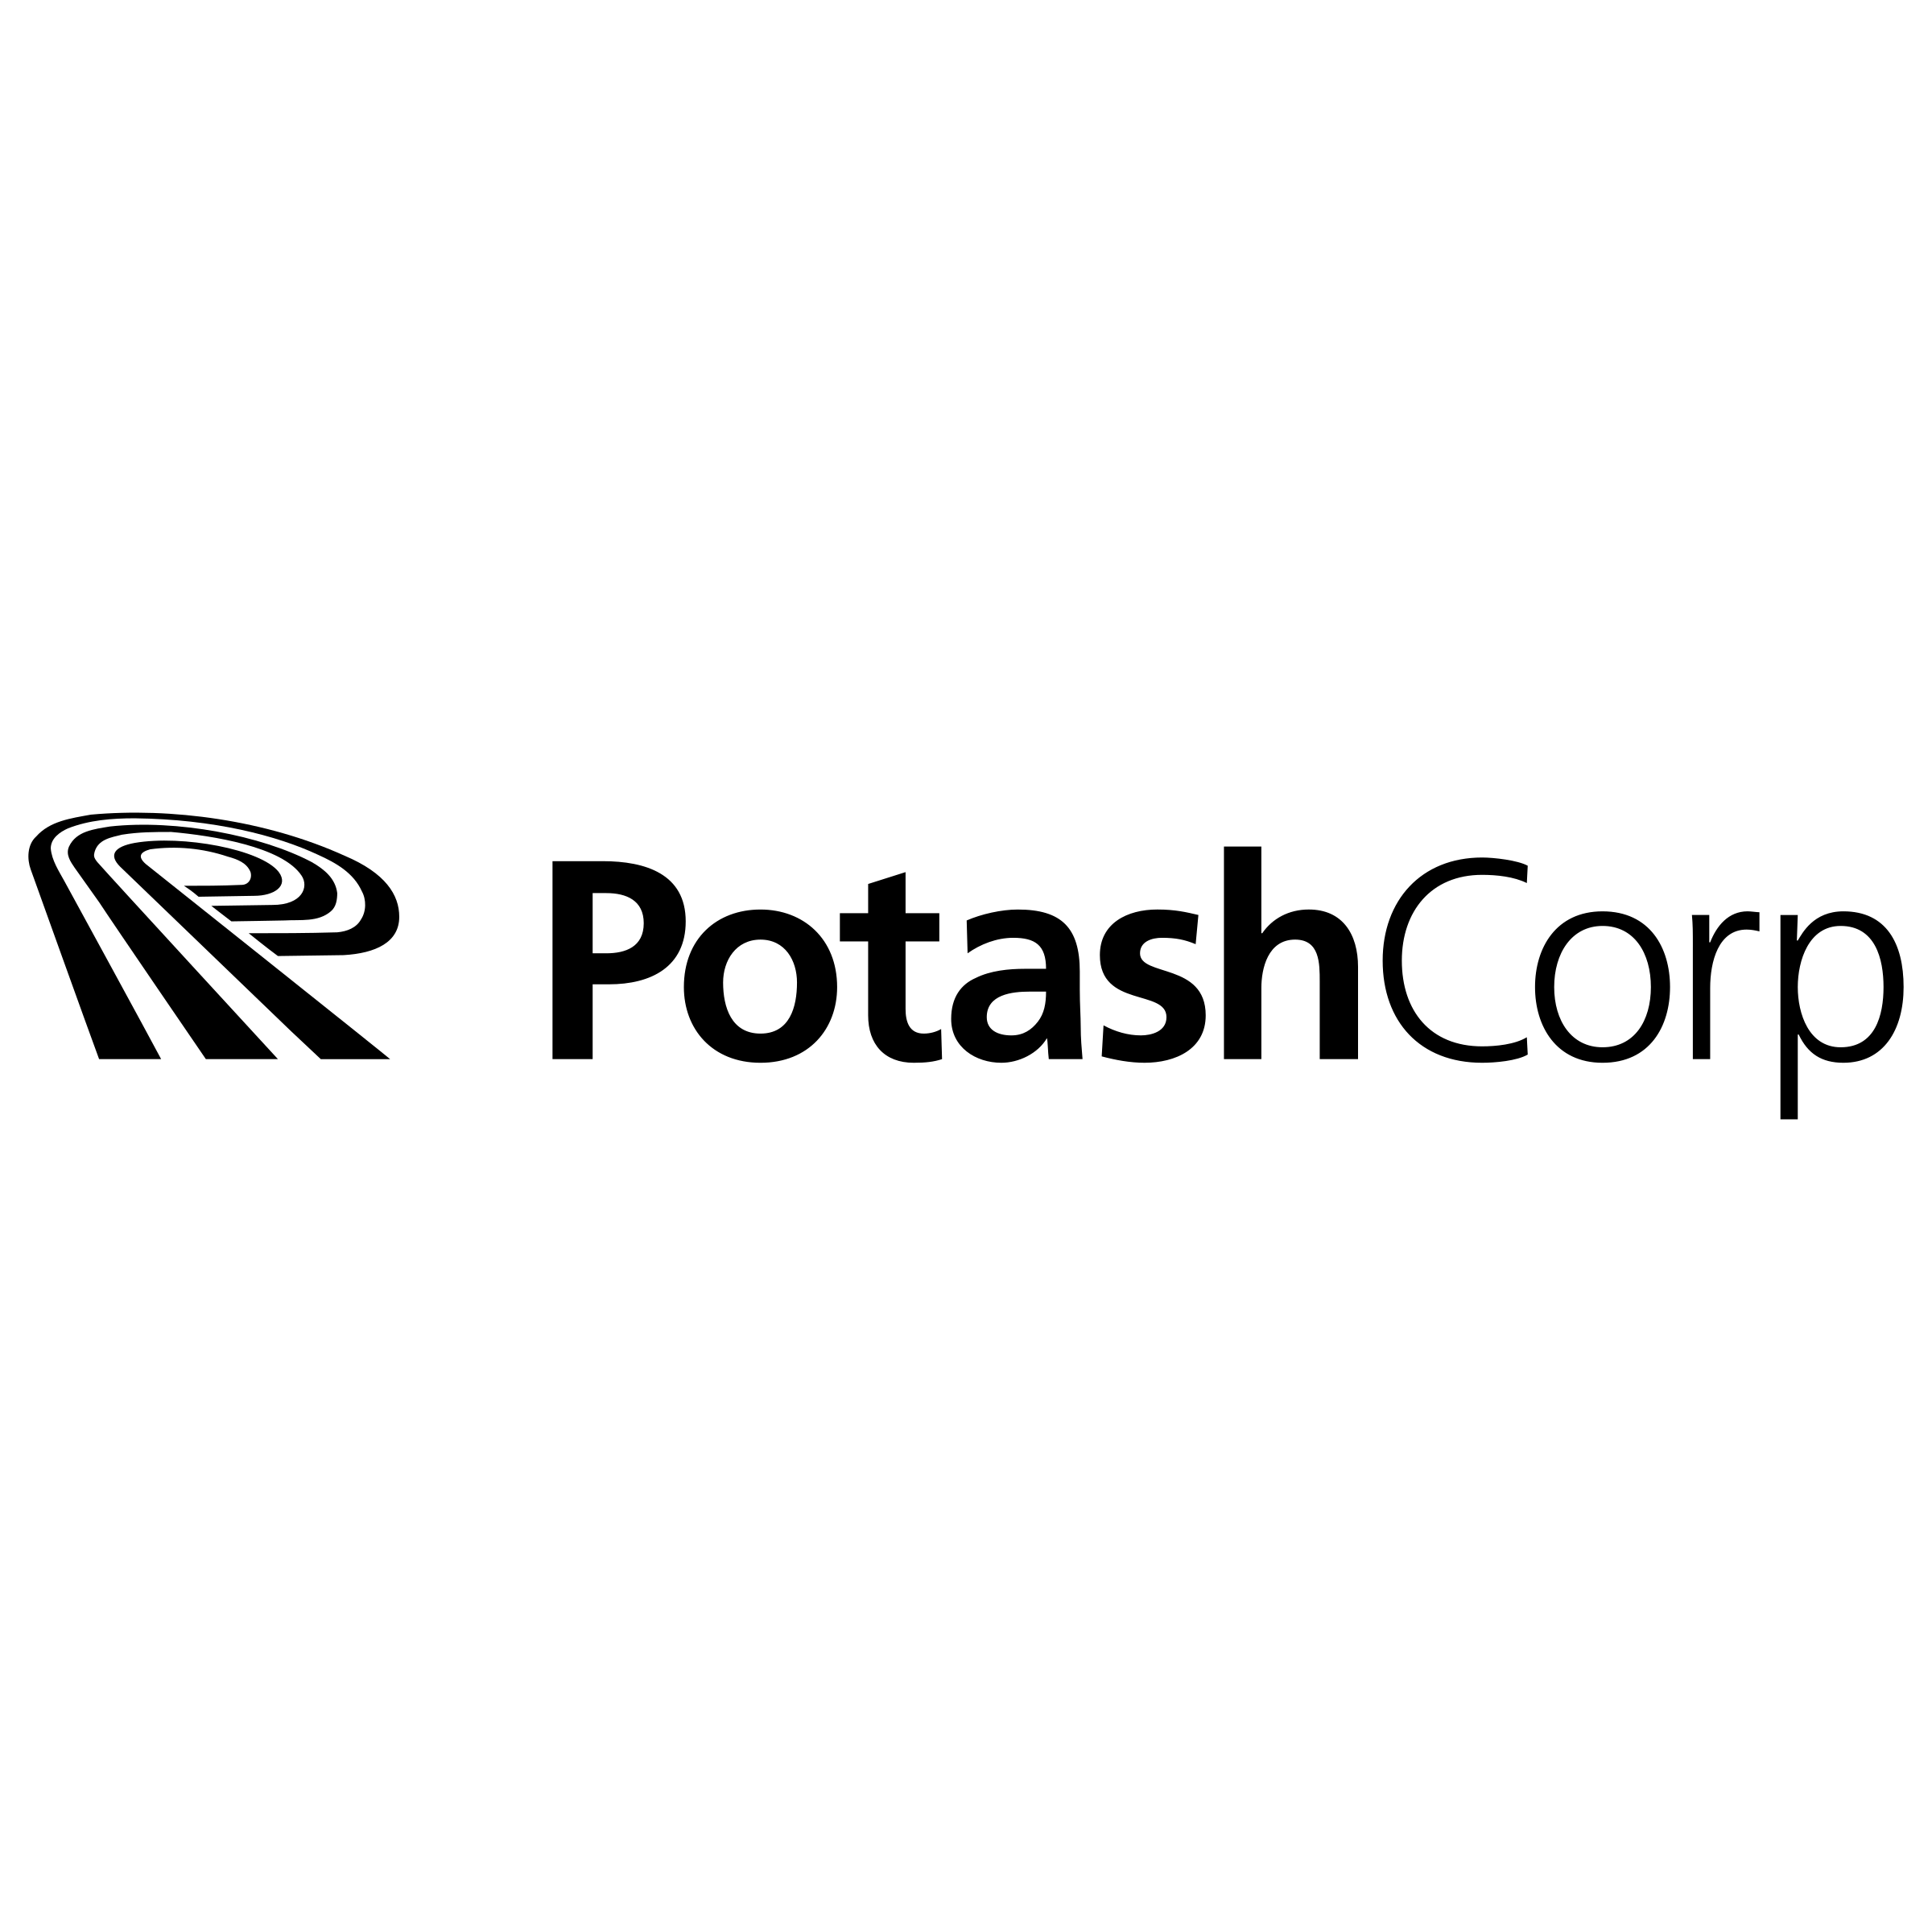 PotashCorp Logo - PotashCorp Logo PNG Transparent & SVG Vector - Freebie Supply